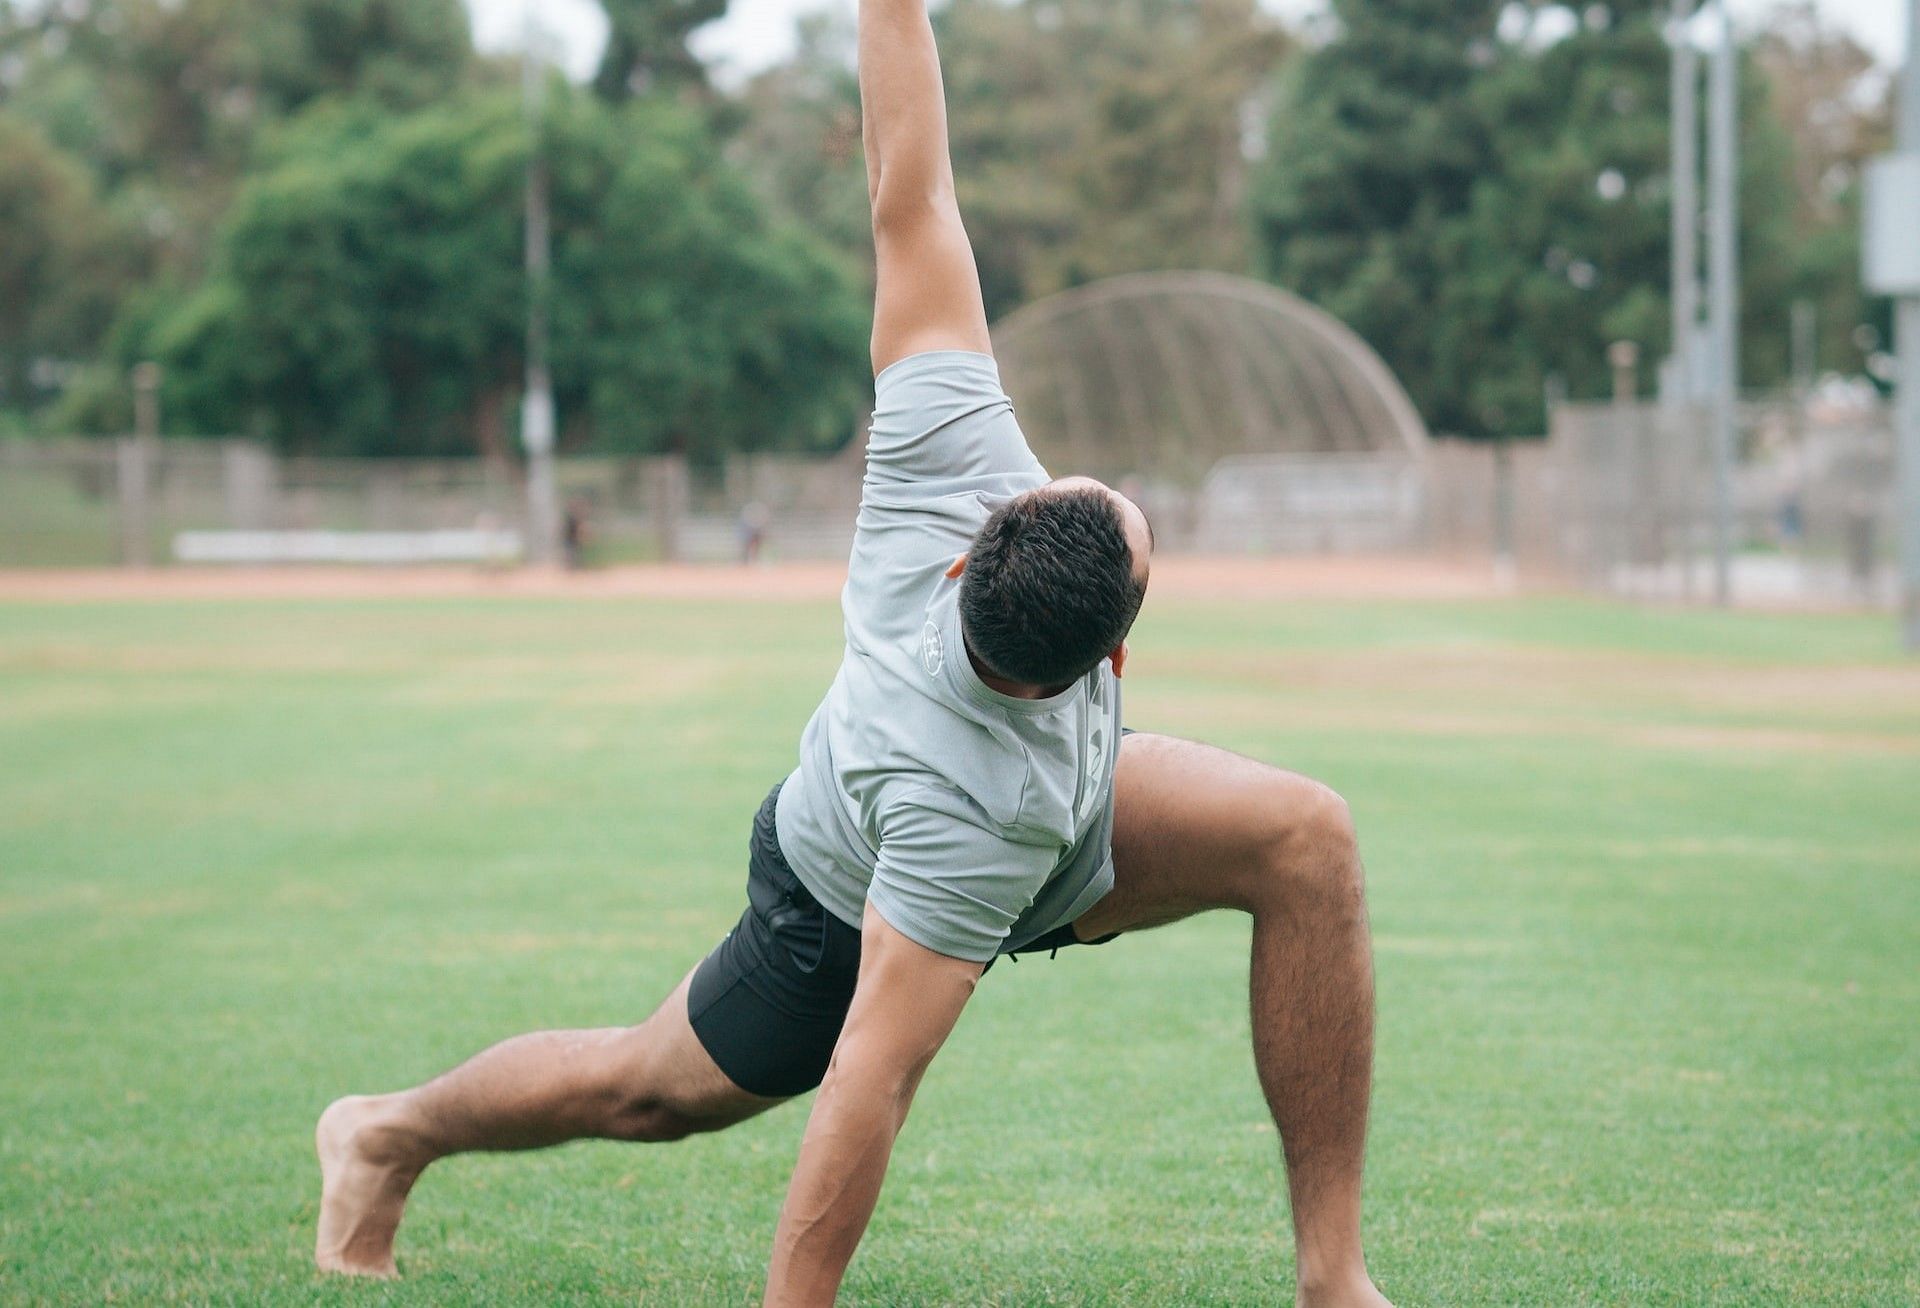 Trapezius stretching exercise to loosen tight traps (Photo via Dex Ezekiel/Unsplash)